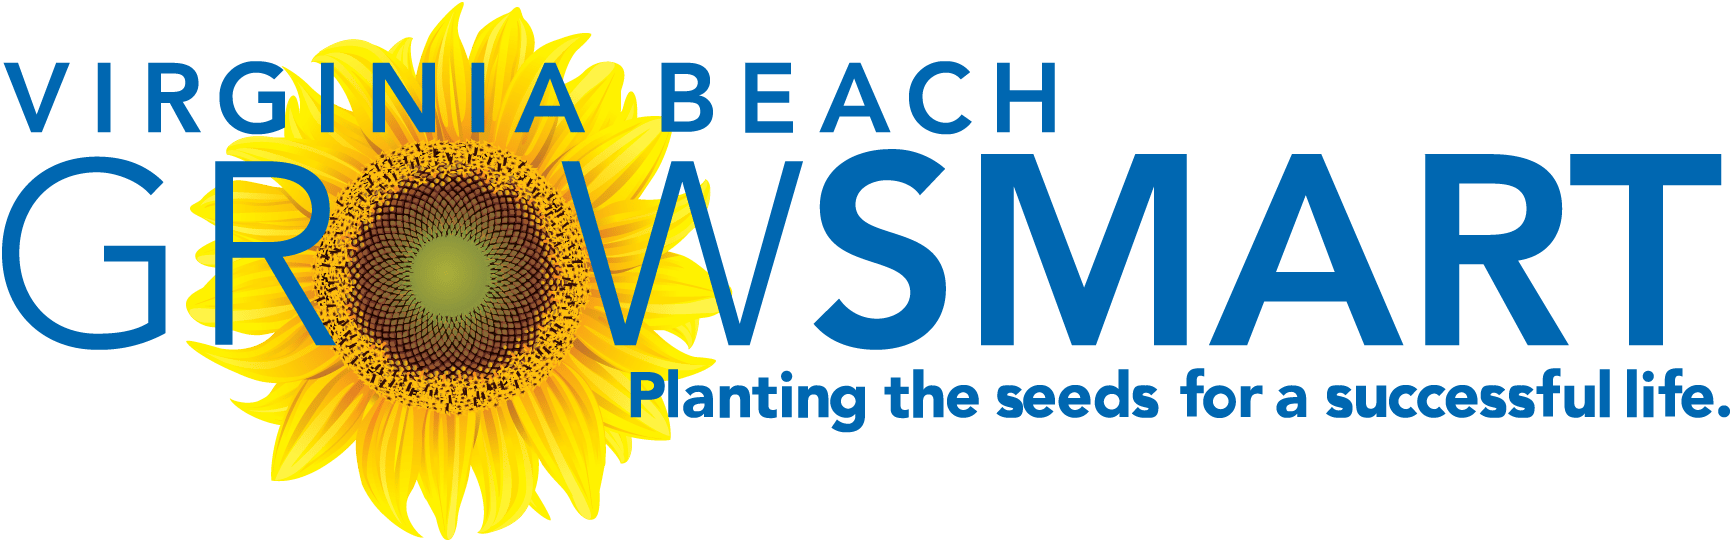 virginia beach growsmart logo